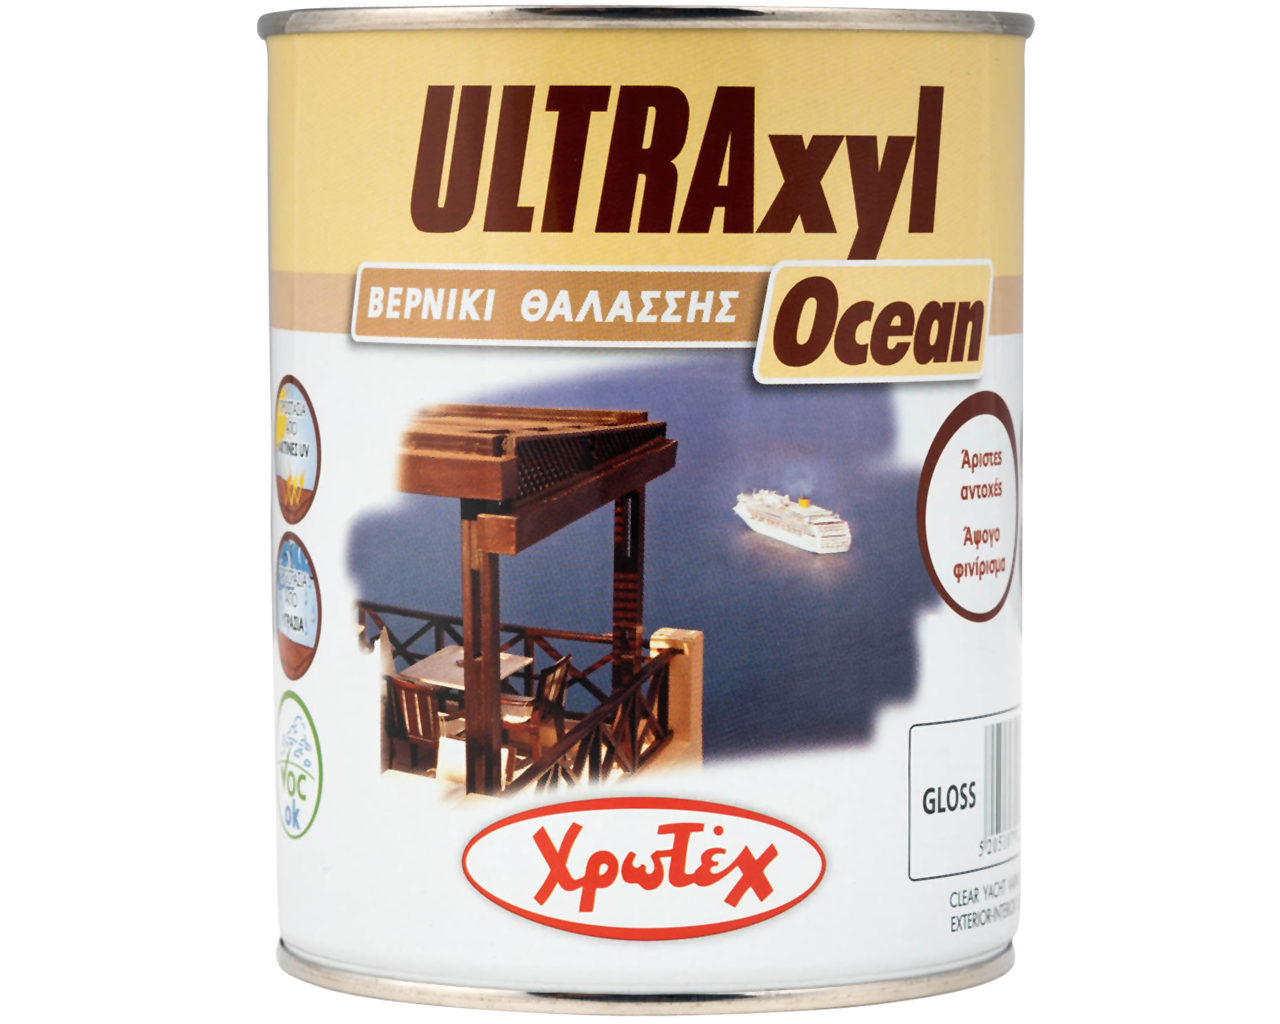 Χρωτέχ Ultraxyl Ocean Βερνίκι Θαλάσσης Ξύλου Ιδανικό για προστασία από έντονη Υγρασία και Ηλιοφάνεια περιέχει Φίλτρα UV Διάφανο 750ml